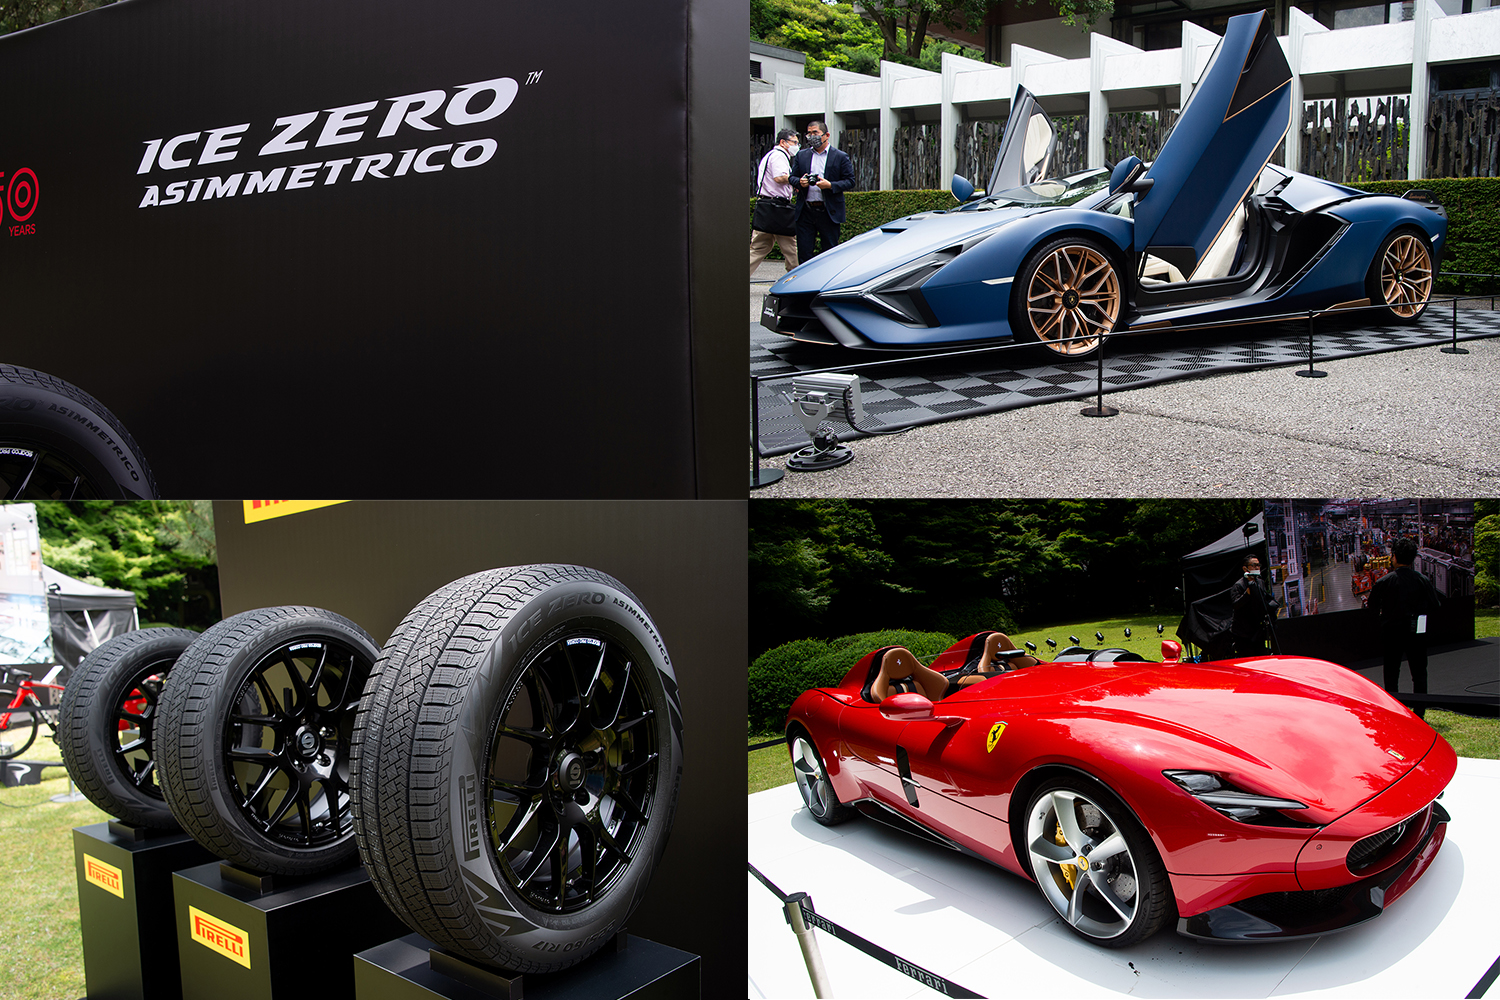 ピレリより新作スタッドレスタイヤ「アイス・ゼロ・アシンメリコ」が登場！ 15インチから20インチまで幅広いサイズをカバー | 自動車情報・ニュース  WEB CARTOP